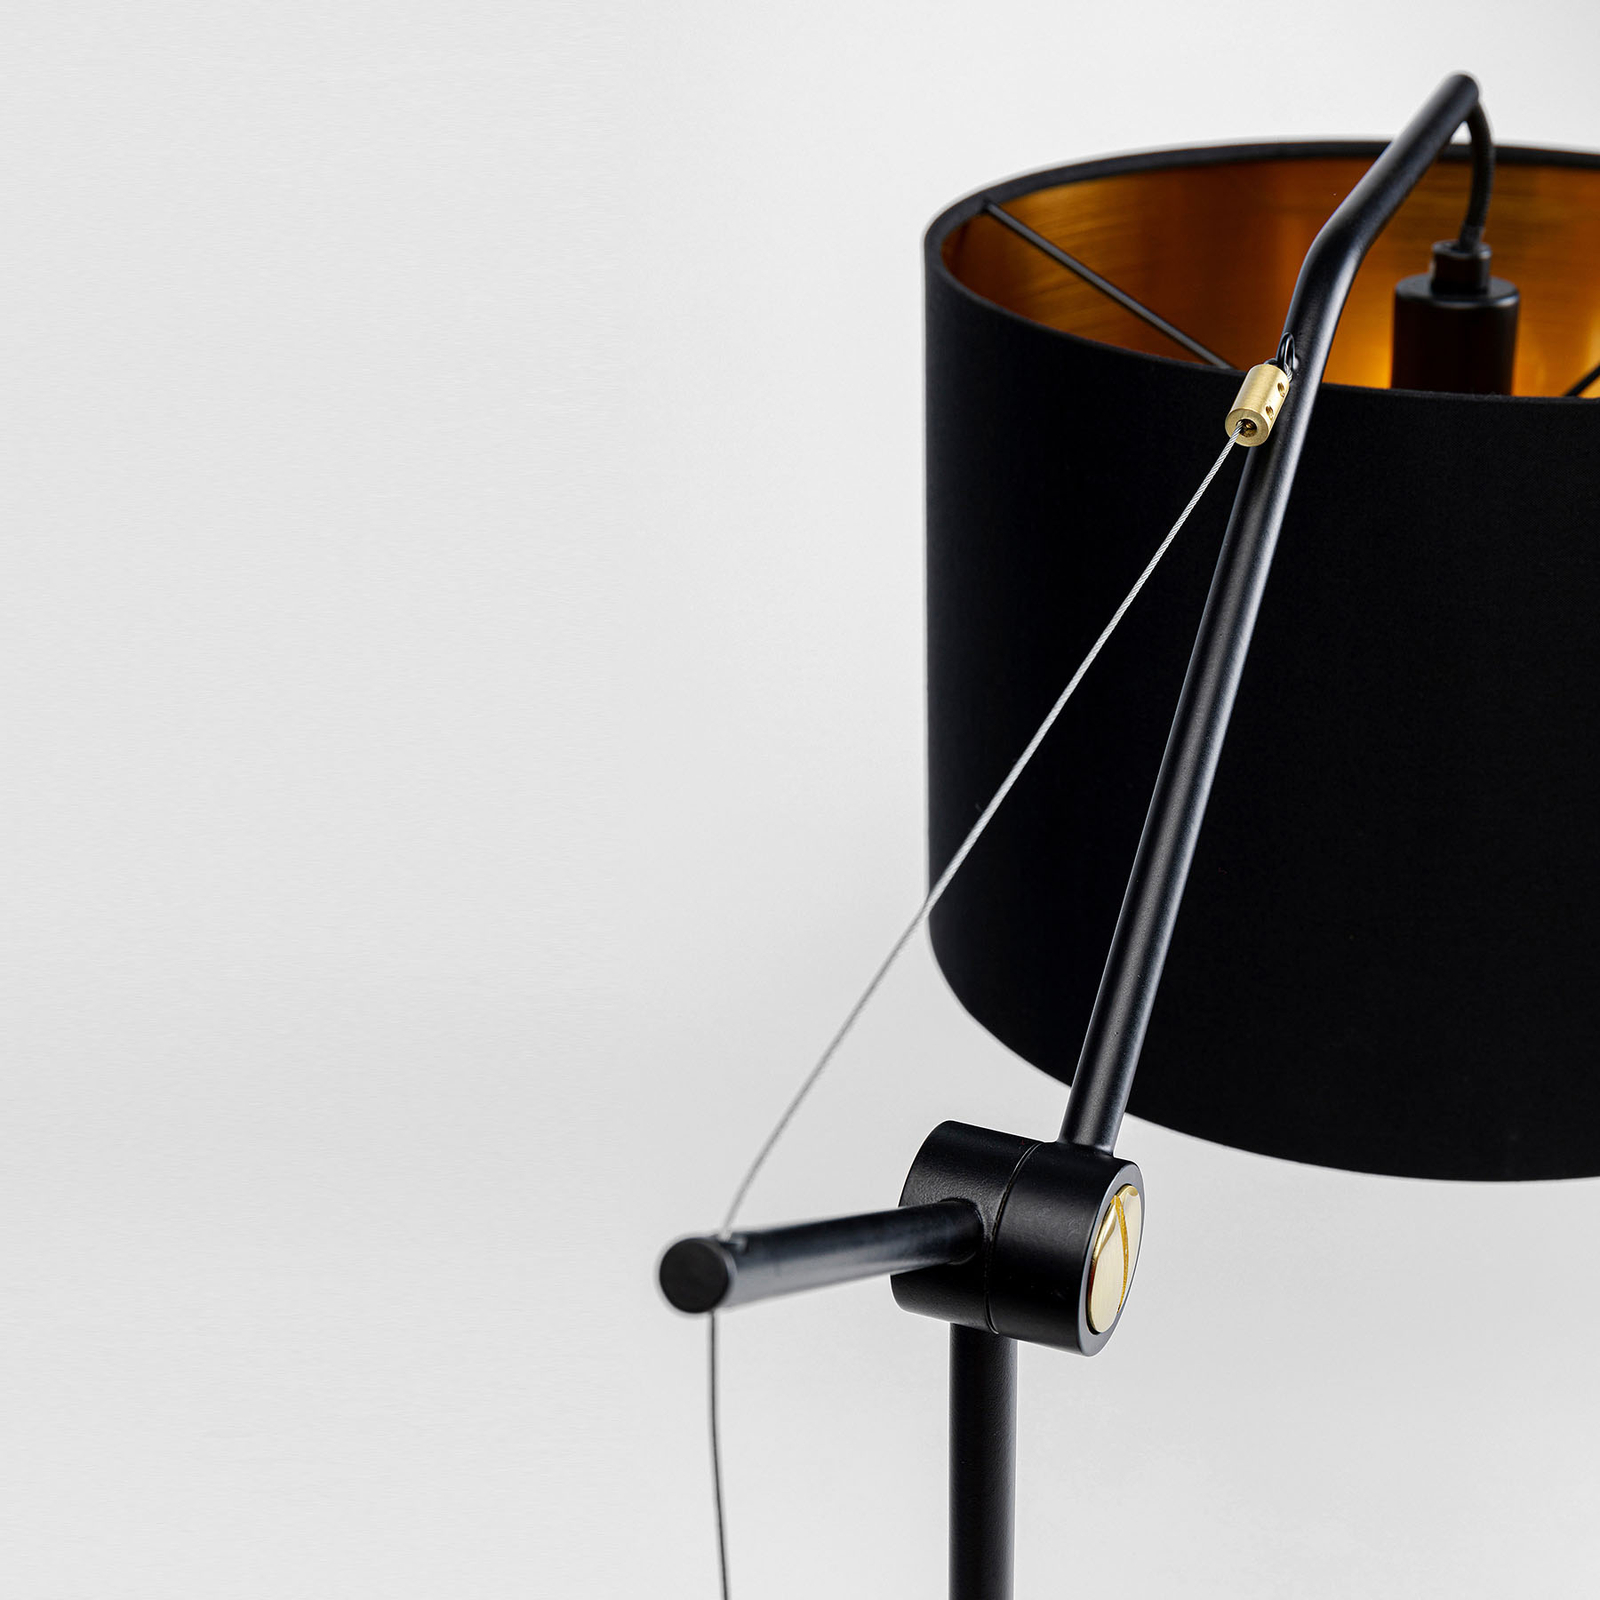 KAREN Salotto table lamp, height-adjustable